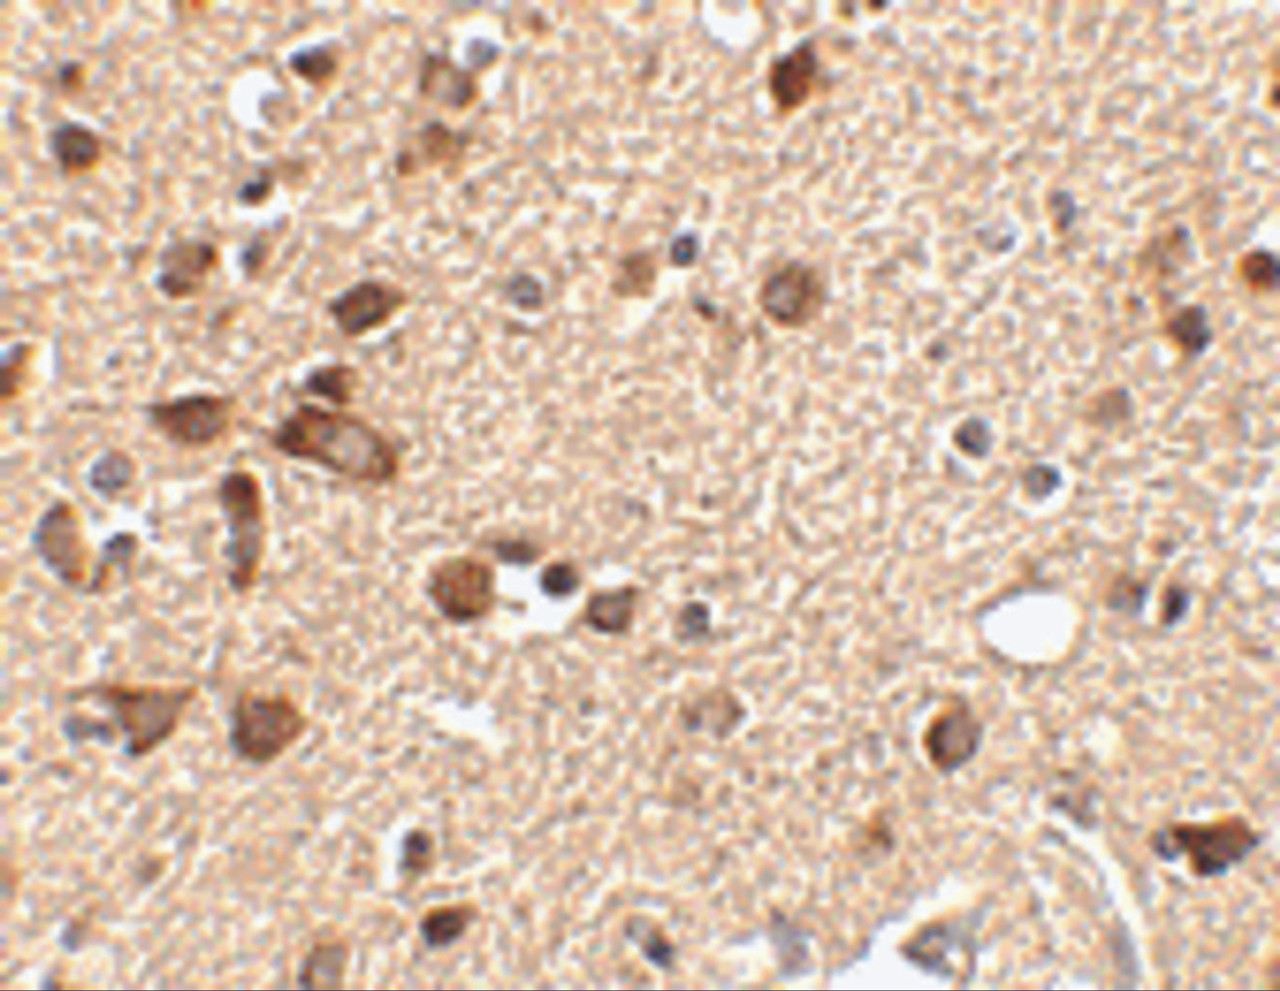 Immunohistochemistry of Stk39 in human brain tissue with Stk39 antibody at 2.5 ug/mL.